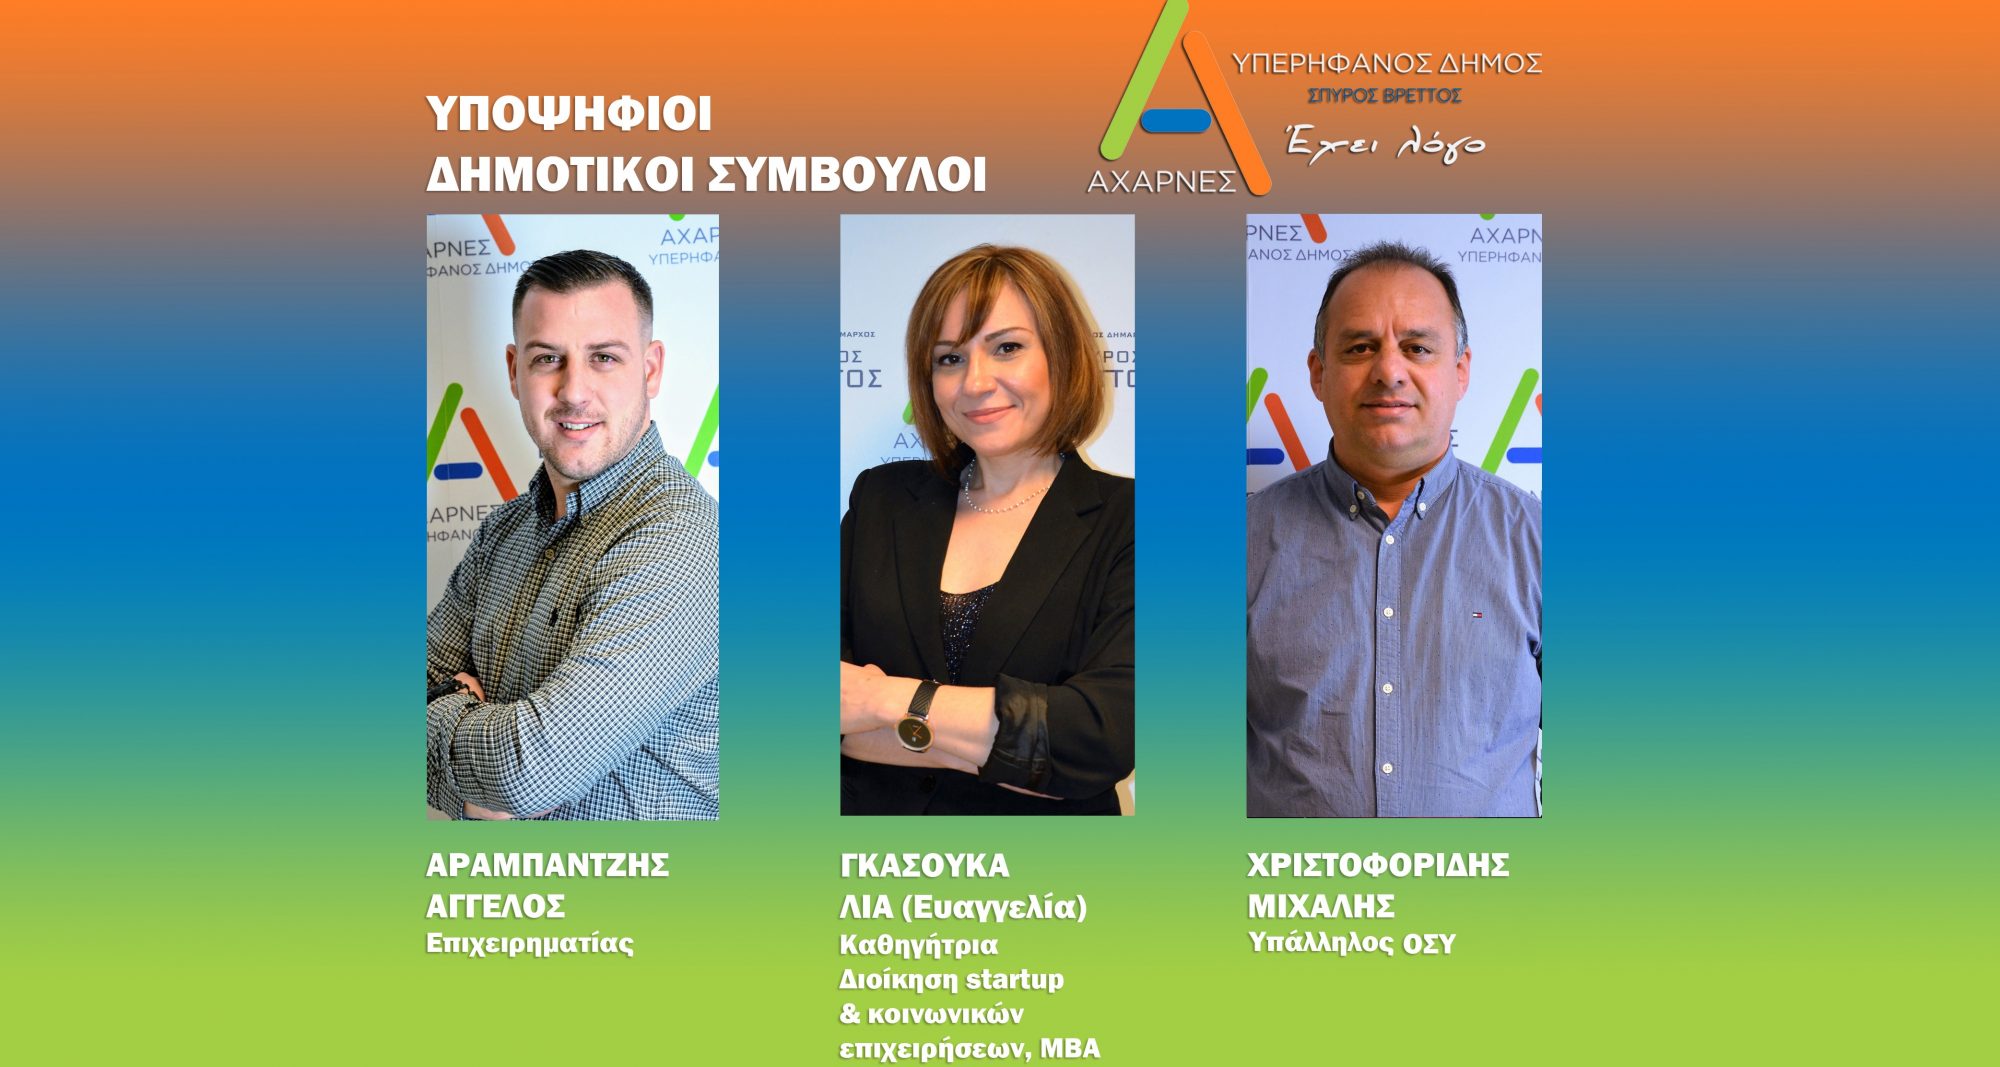 Τρεις νέες ανακοινώσεις υποψηφίων από το Συνδυασμό του Σπύρου Βρεττού «Αχαρνές Υπερήφανος Δήμος»